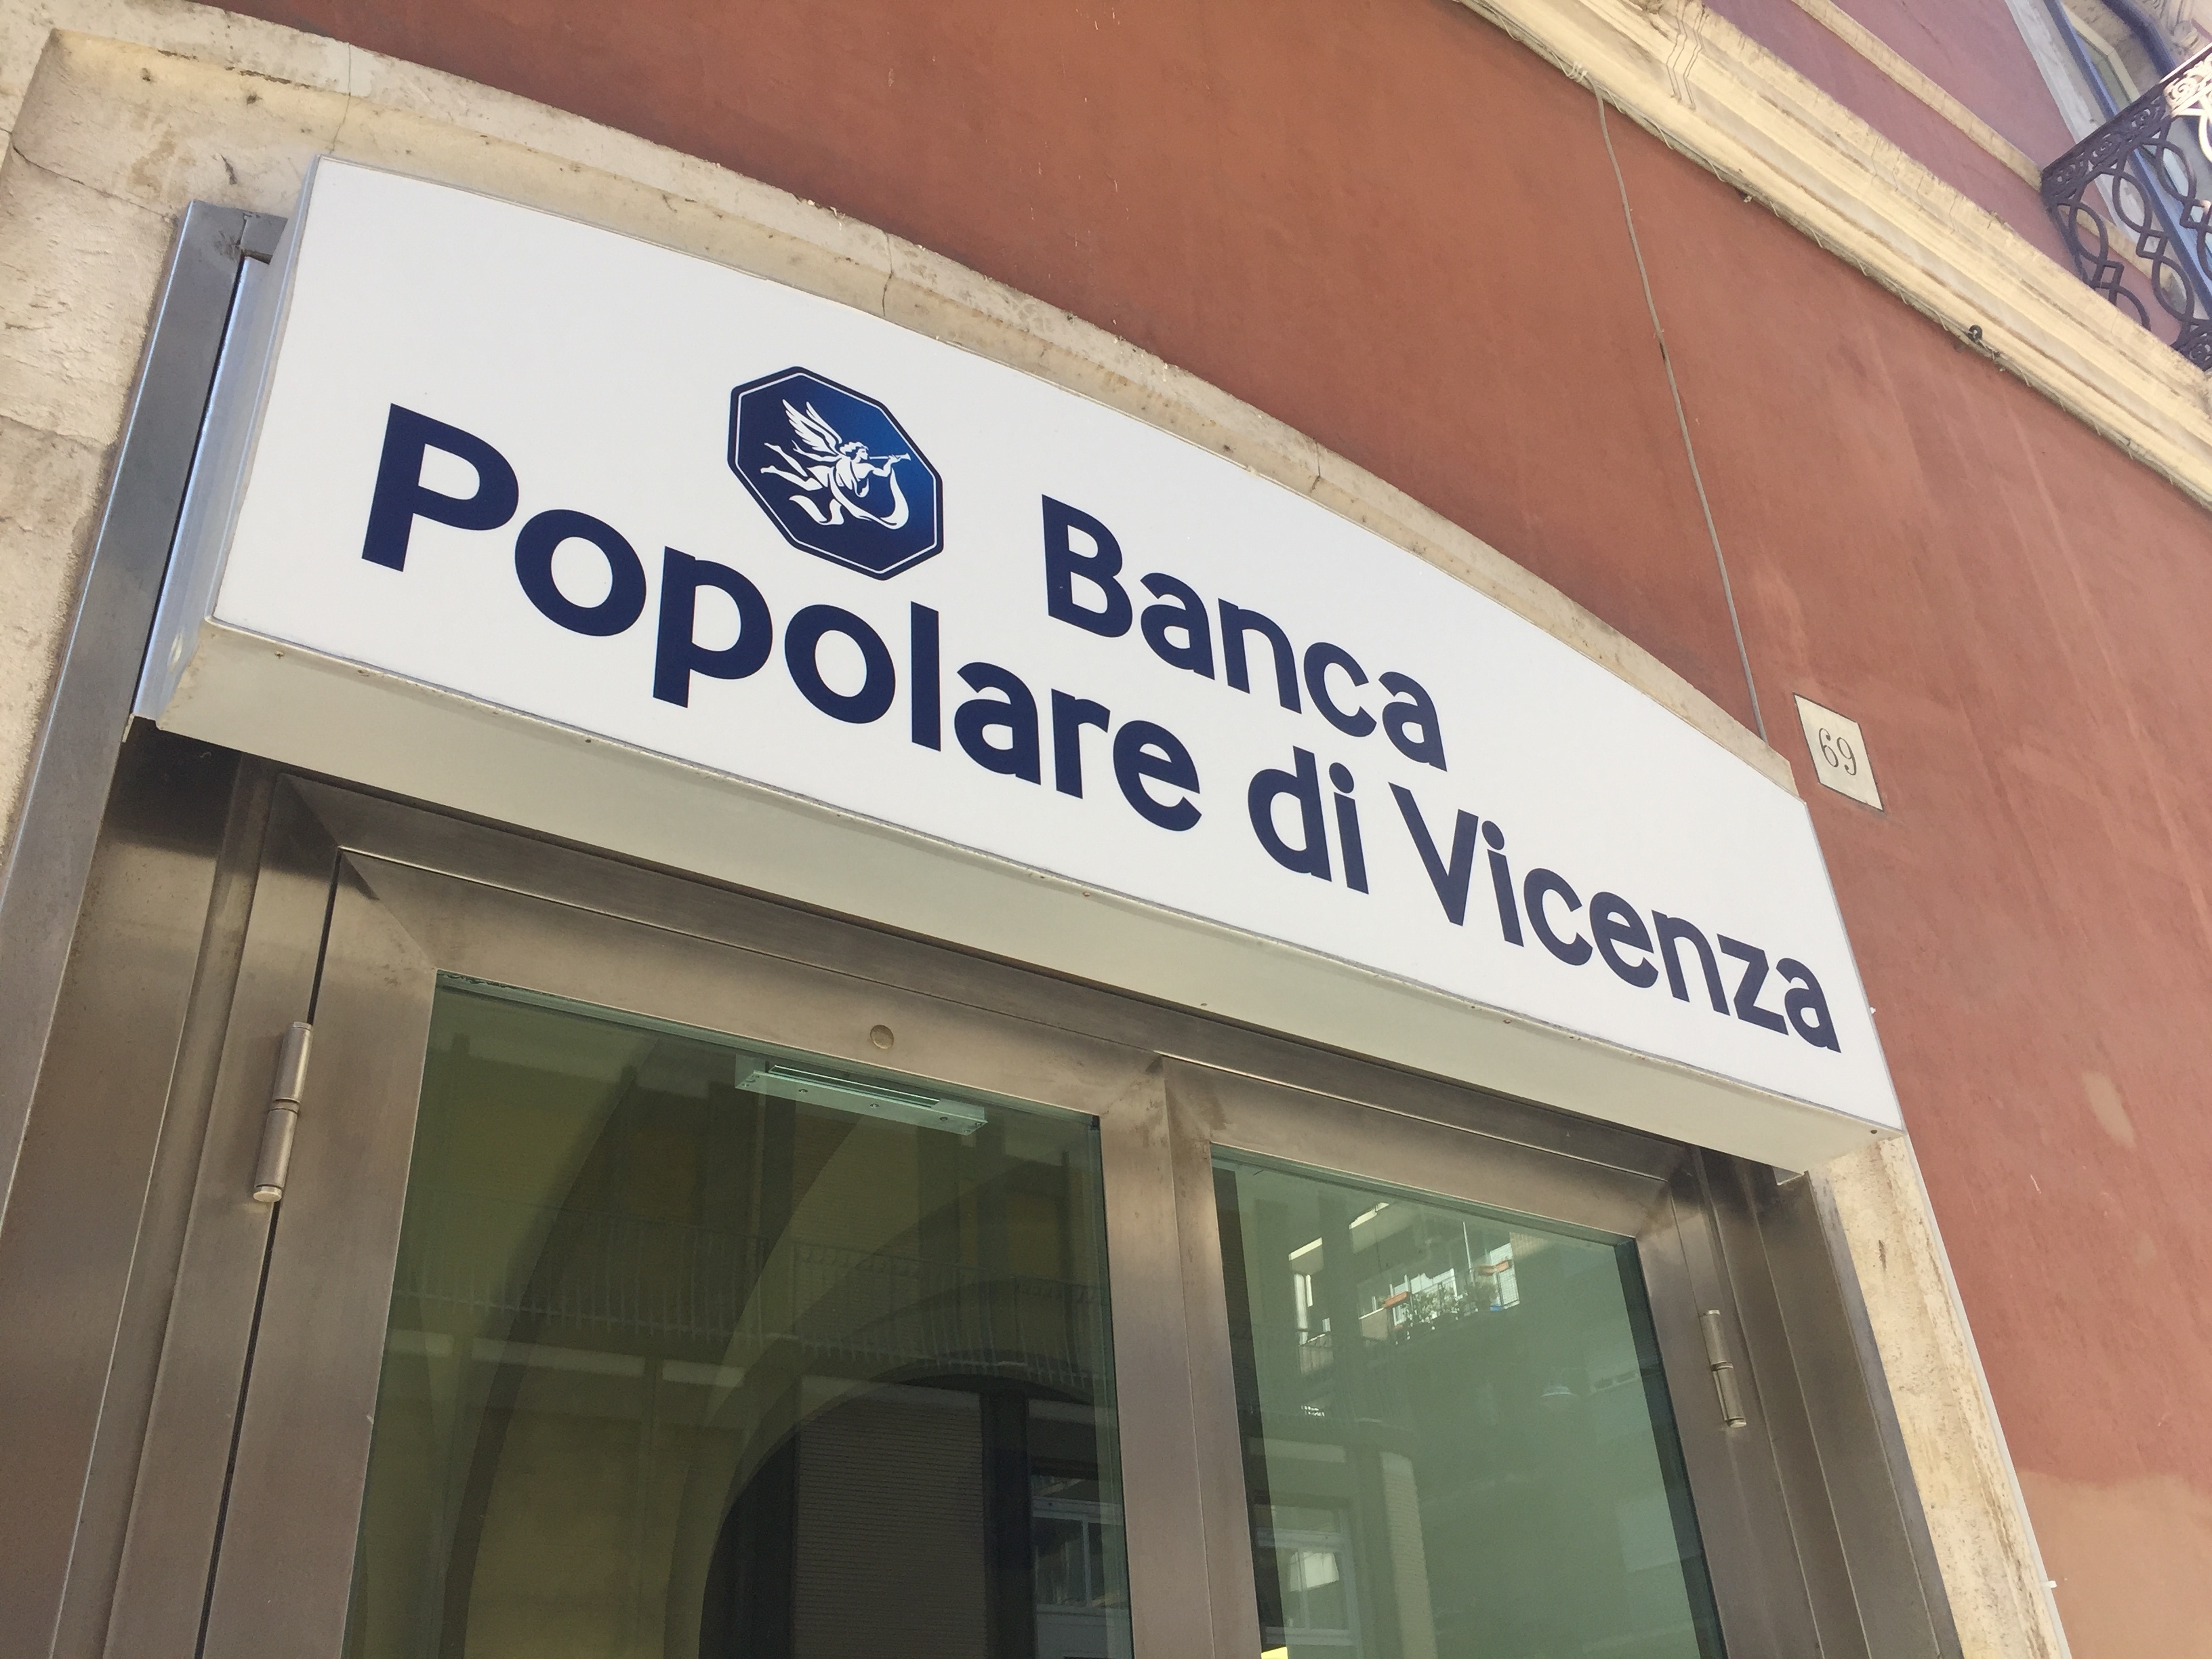 Банка пополаре ди Виченца (Banca Popolare di Vicenza) е една от застрашените от фалит италиански банки